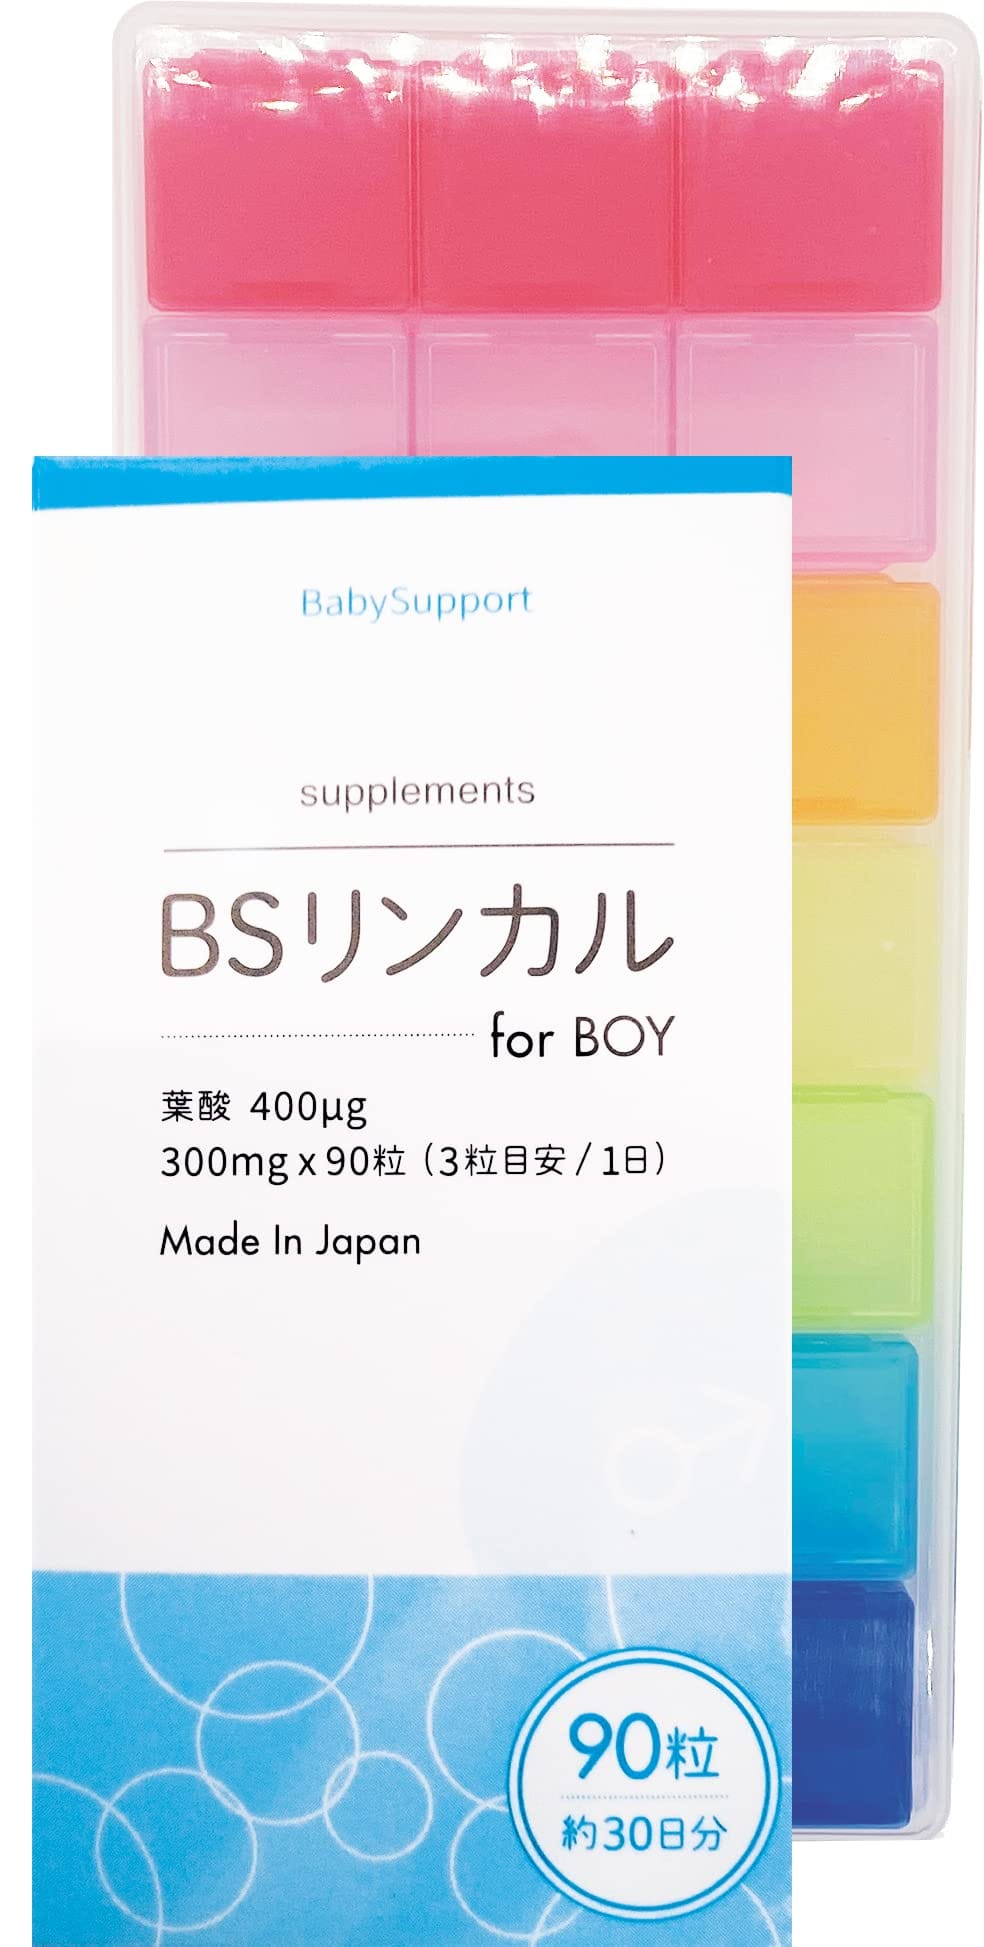 【正規品】 BSリンカル for BOY 30日分 男の子用 葉酸400㎍ 日本製 + ピルケース【セット】